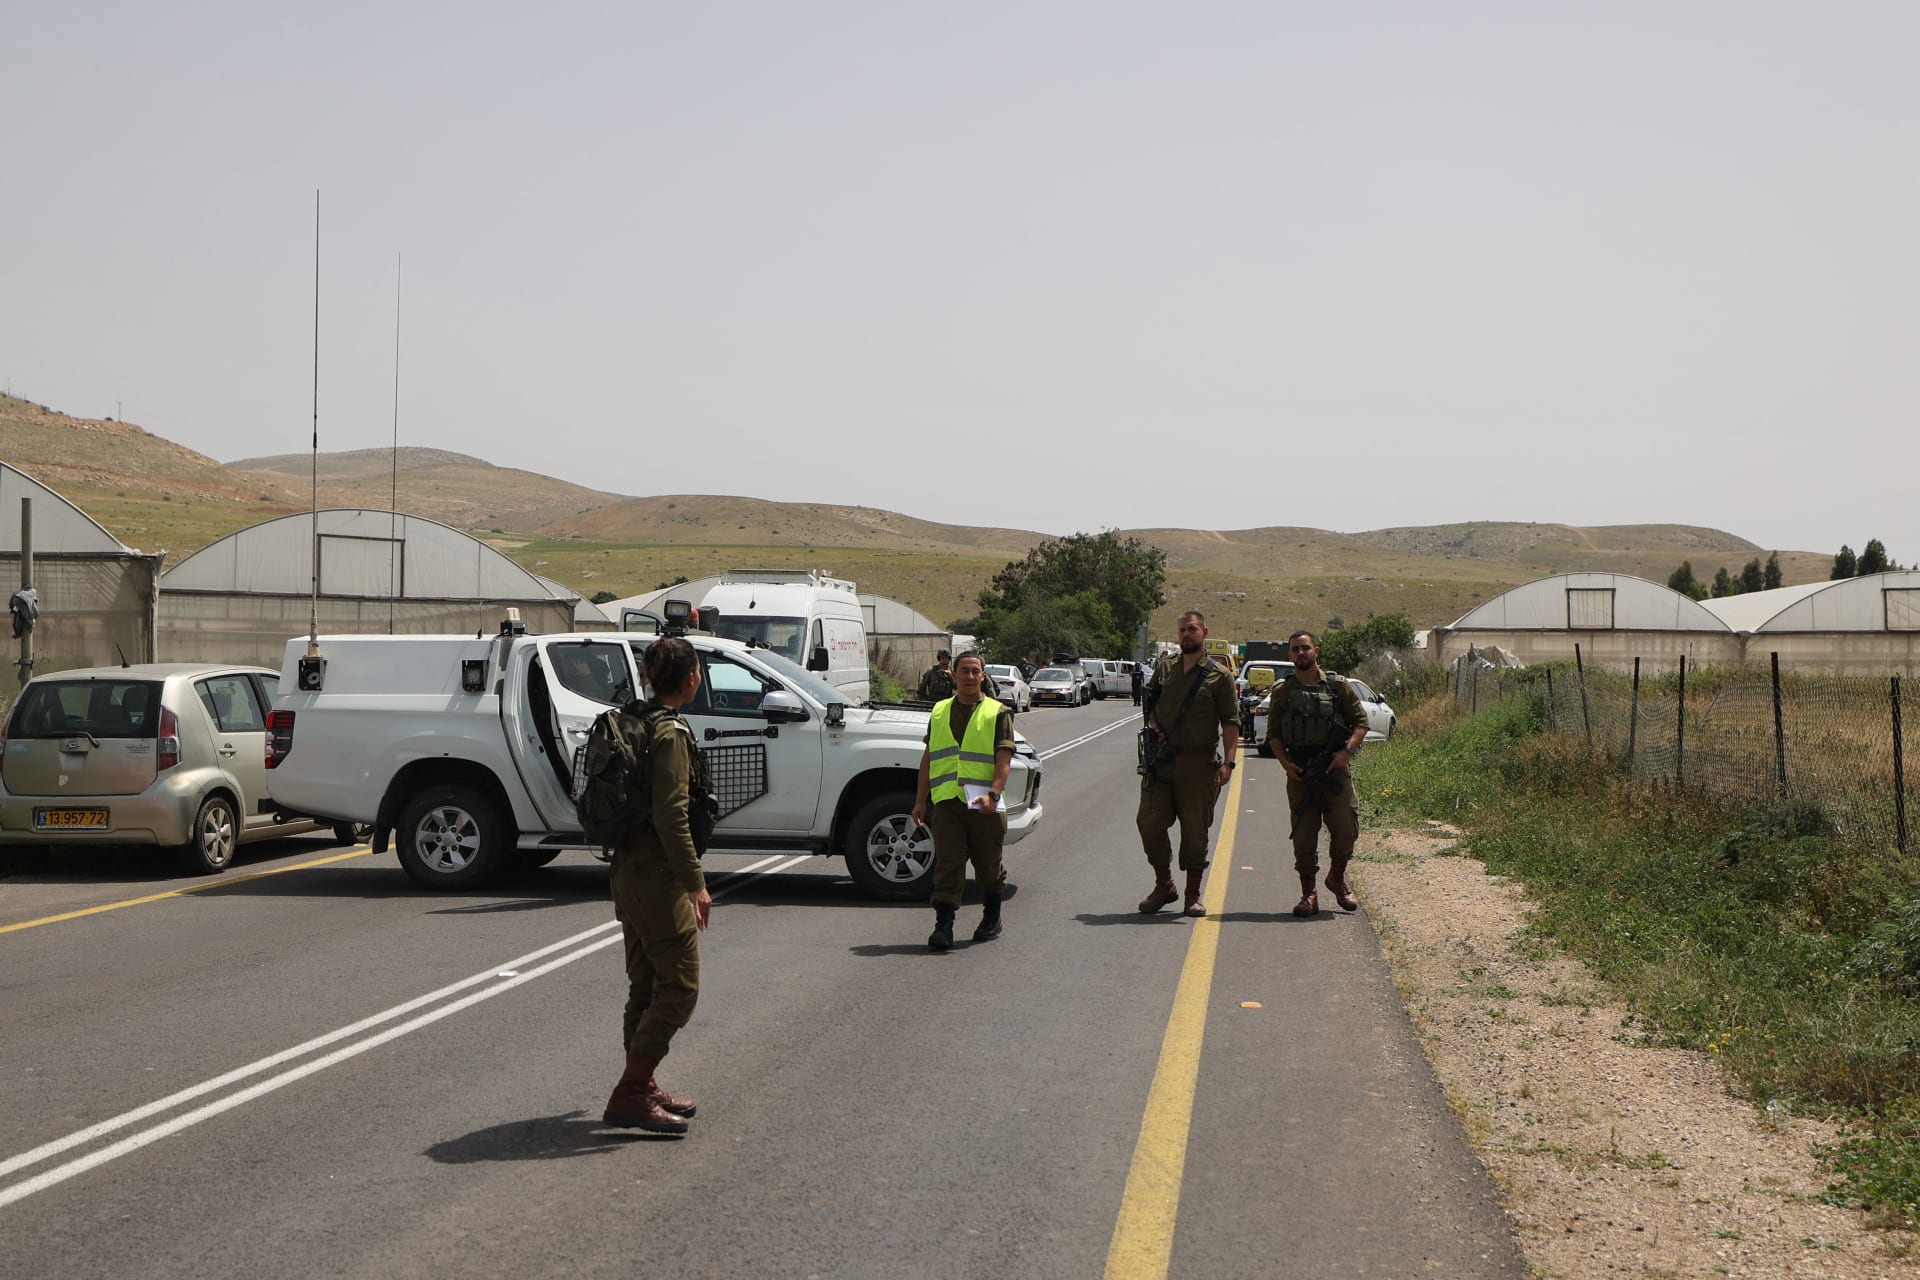 الجيش الإسرائيلي يعلن مقتل امرأتين وإصابة ثالثة بإطلاق نار في غور الأردن بالضفة